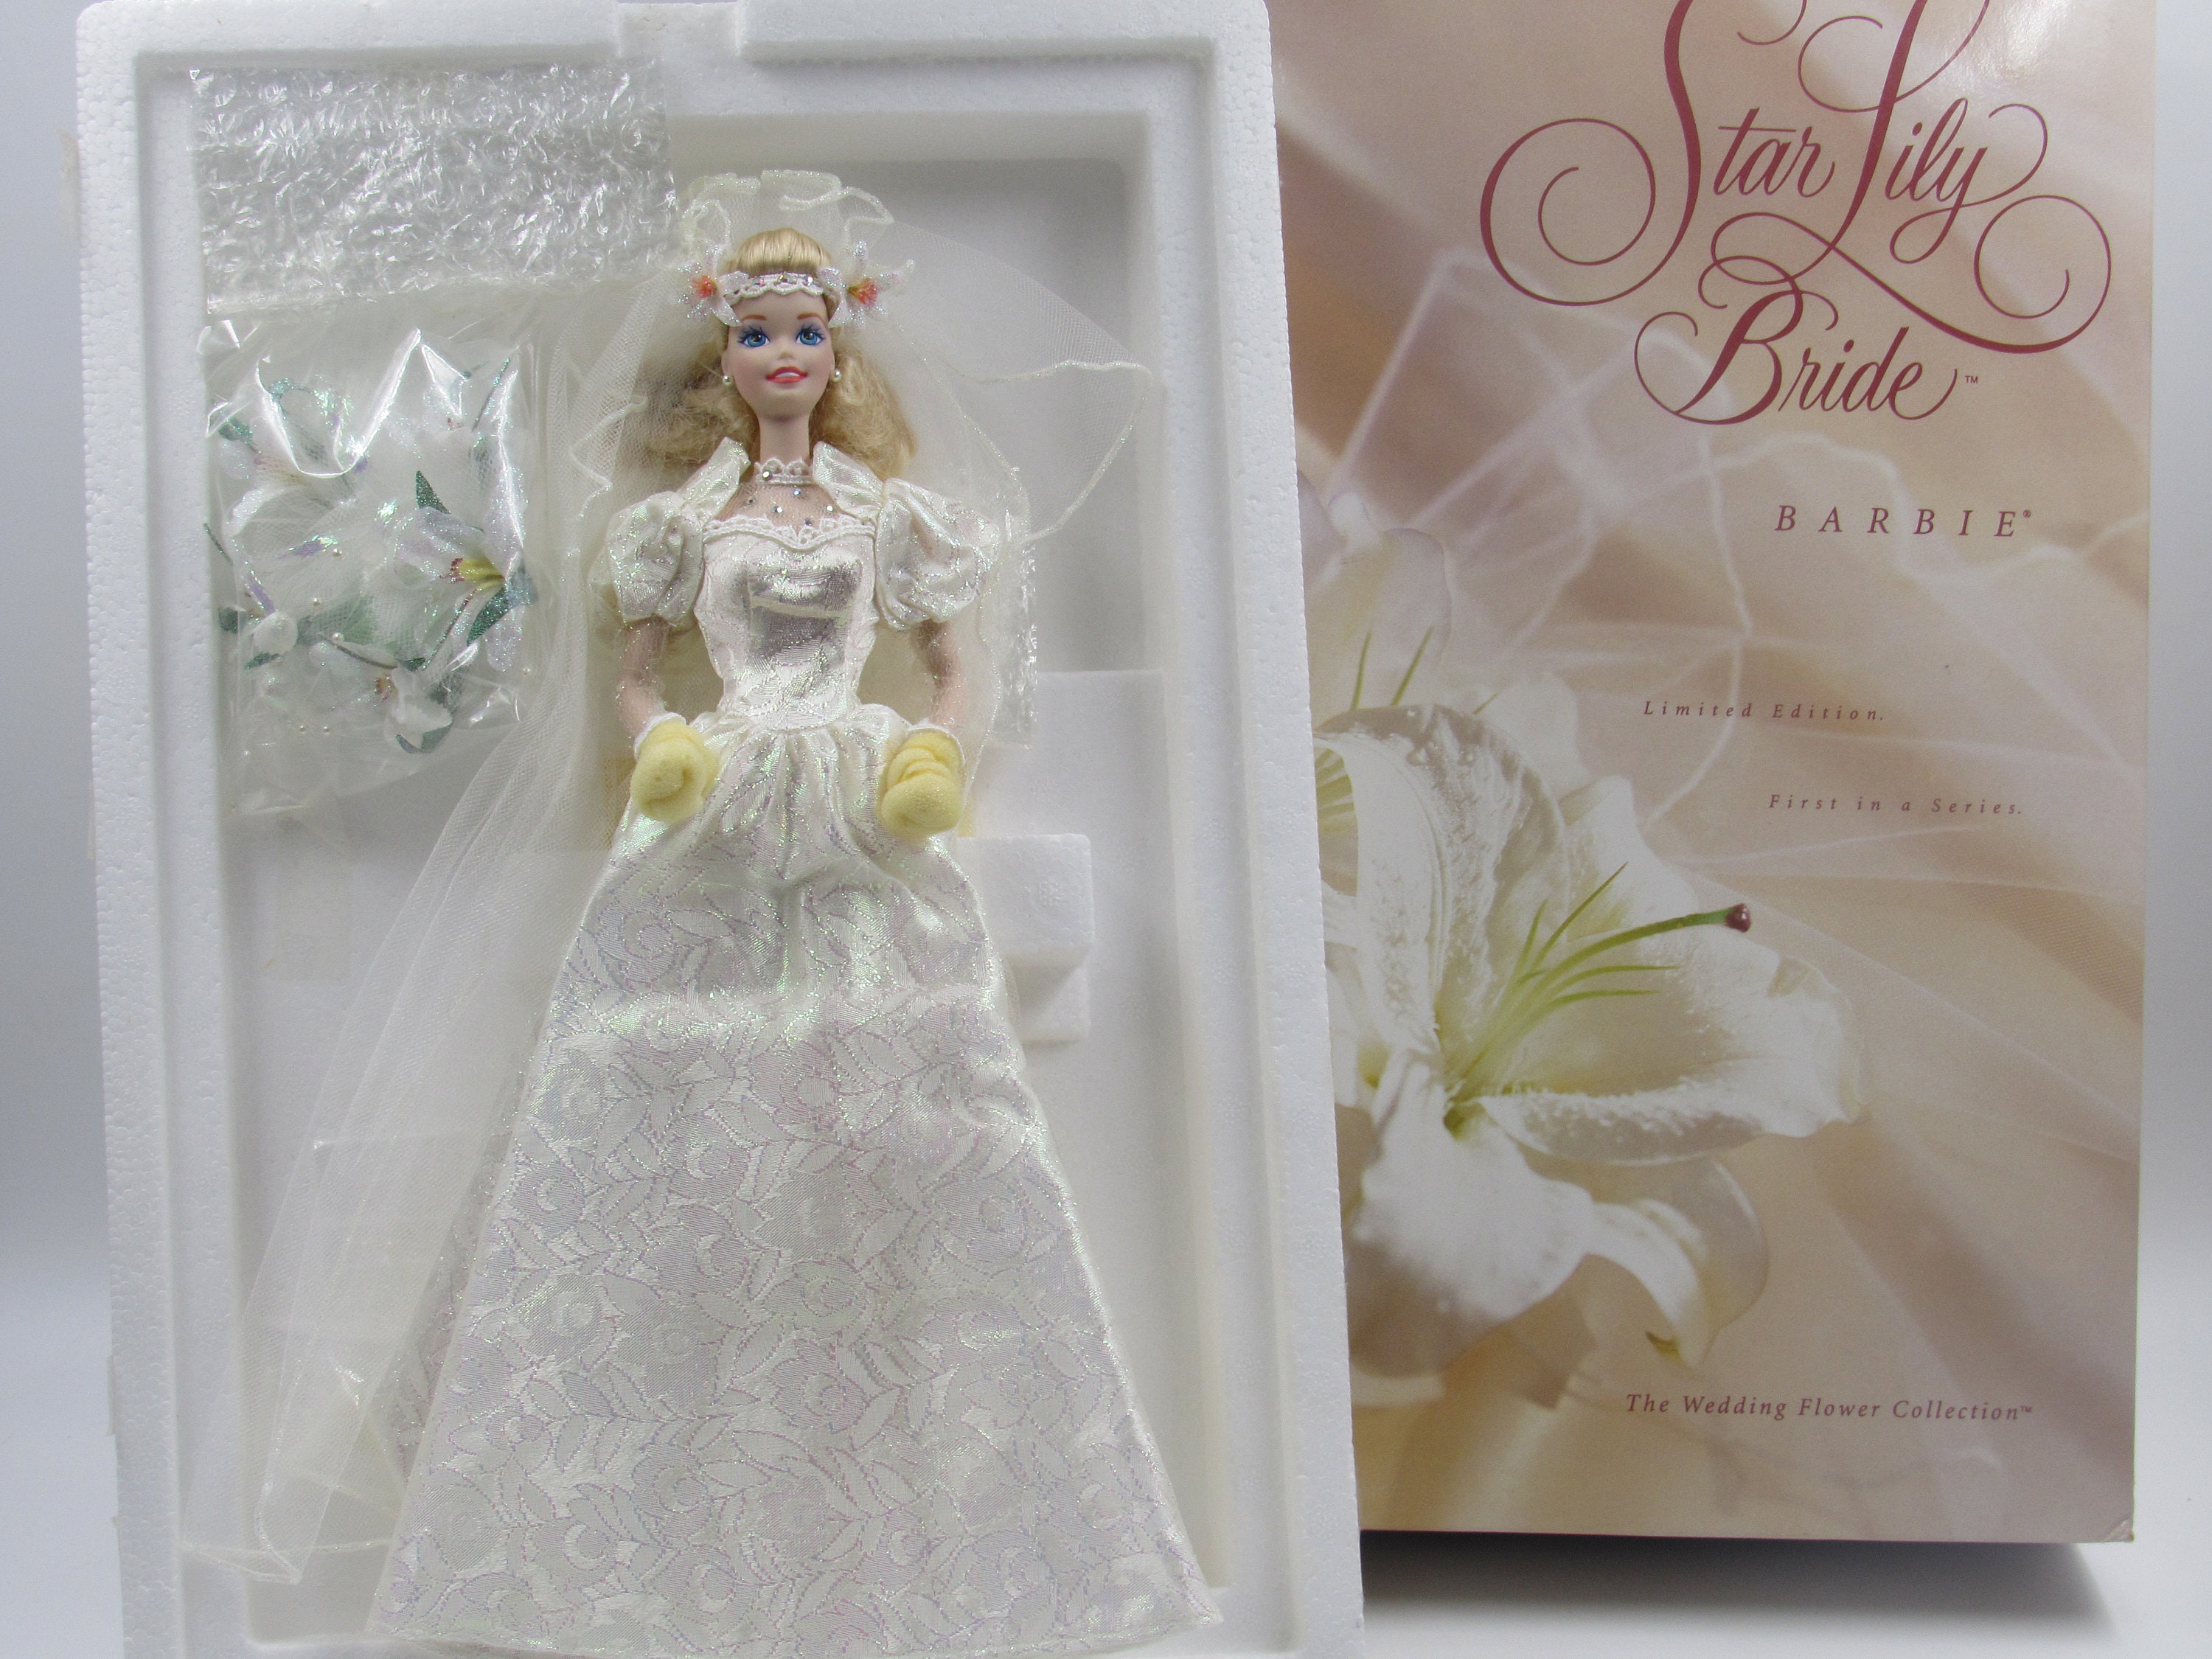 Star Lily Bride Barbie Doll Limited Edition Wedding Flower